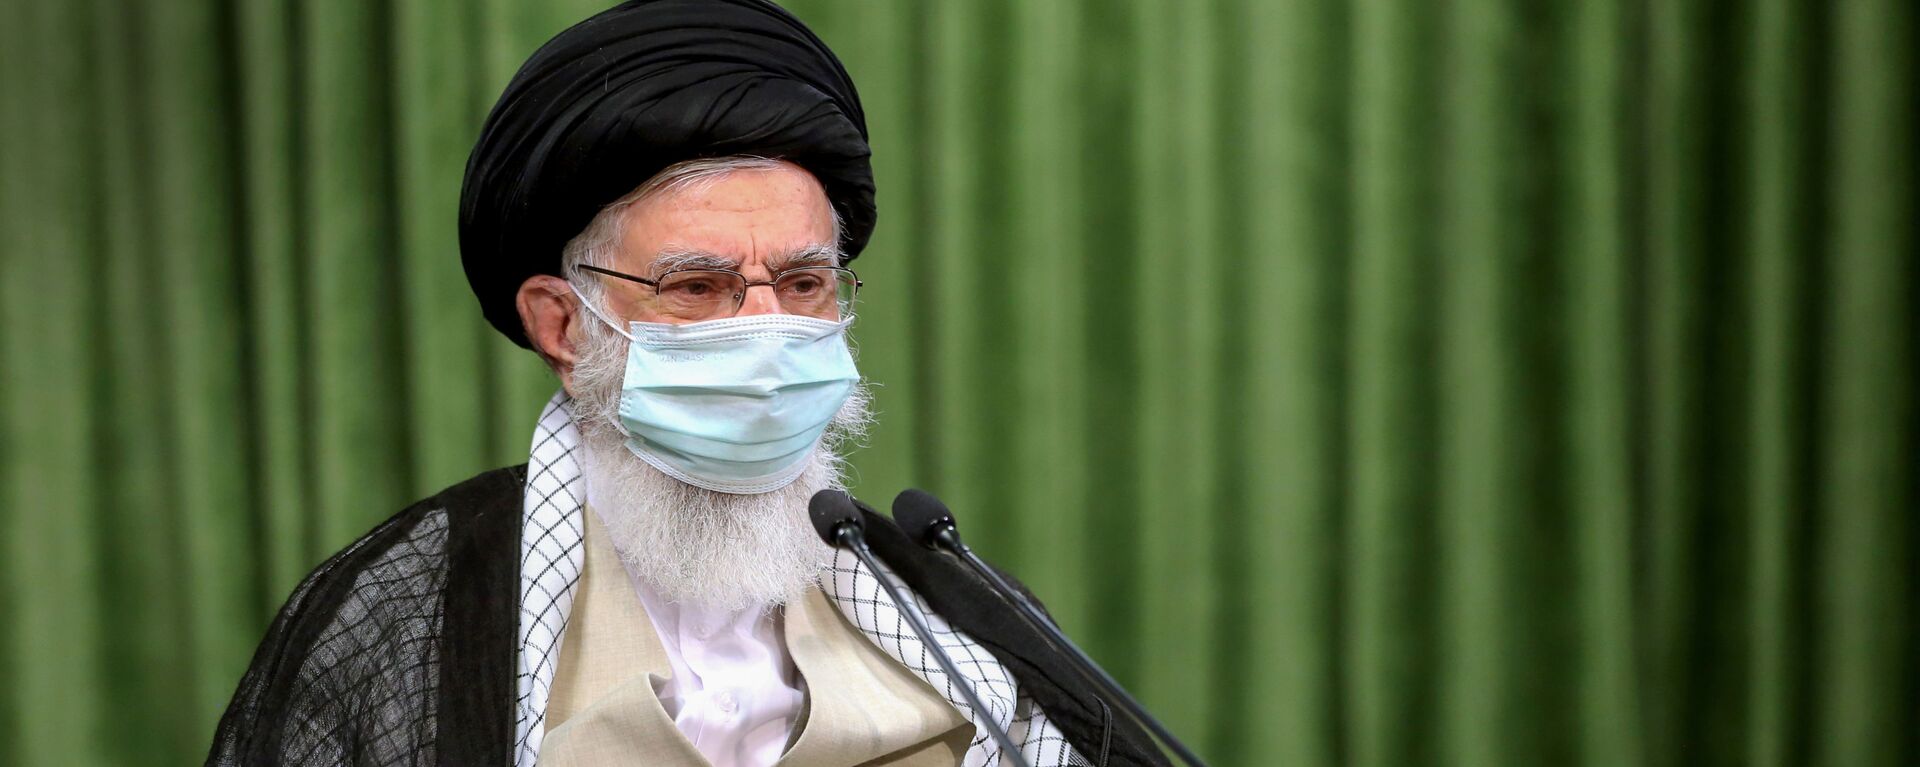 Верховный лидер аятолла Али Хаменеи в защитной маске - Sputnik Таджикистан, 1920, 08.01.2021